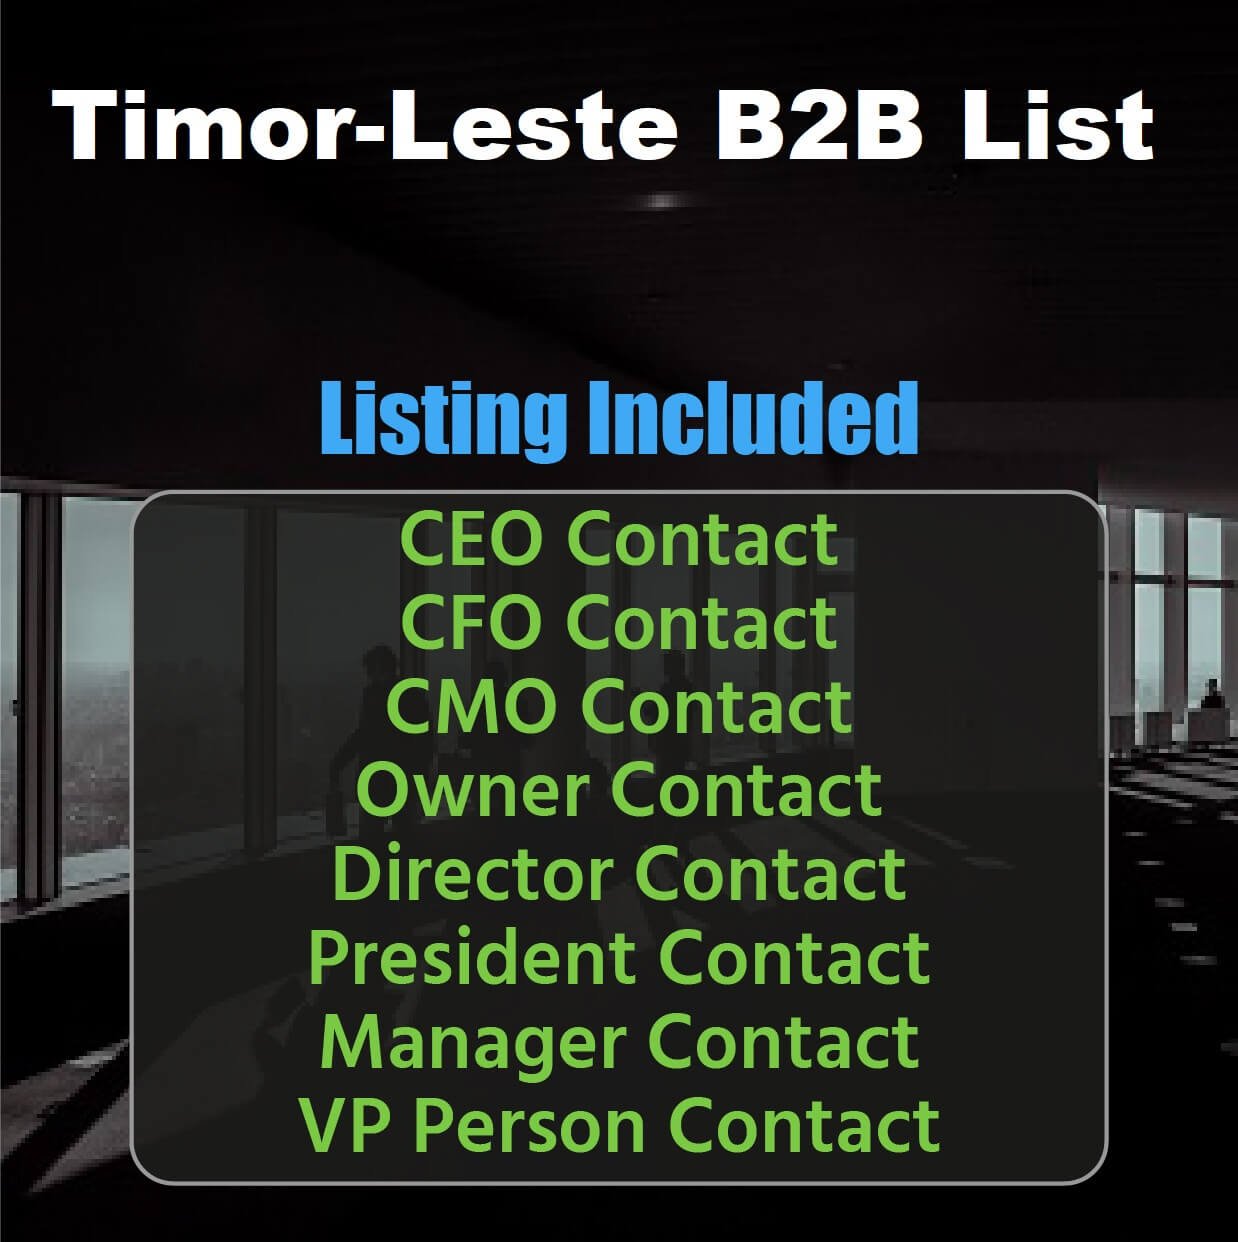 Lista B2B Timor-Leste